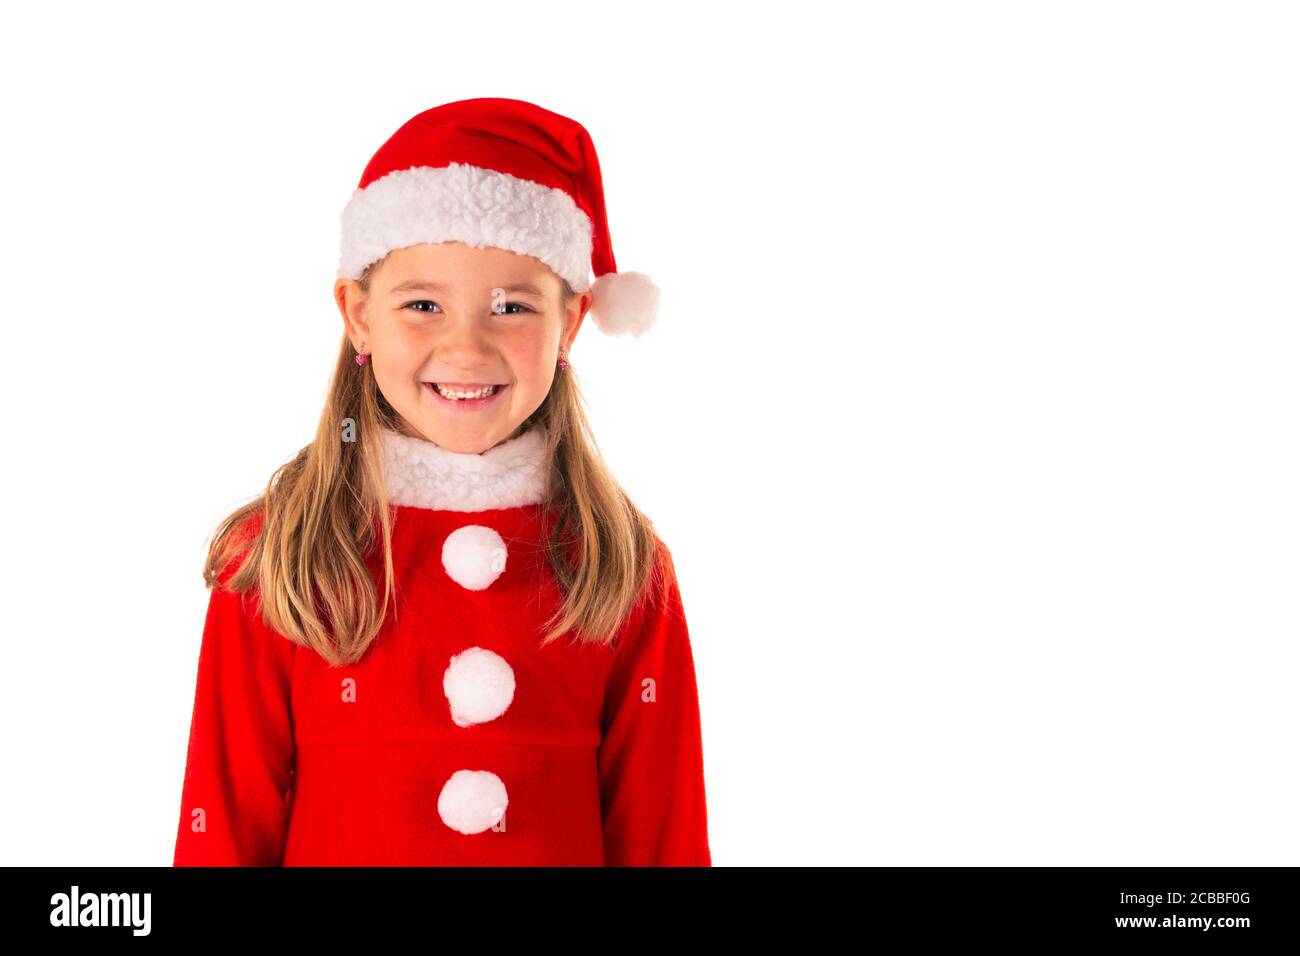 Portrait von schönen 8 Jahre altes Mädchen lächelnd und tragen Rotes weihnachtskostüm mit rotem Kleid und einem Weihnachtsmann hut isoliert auf weiß Stockfoto